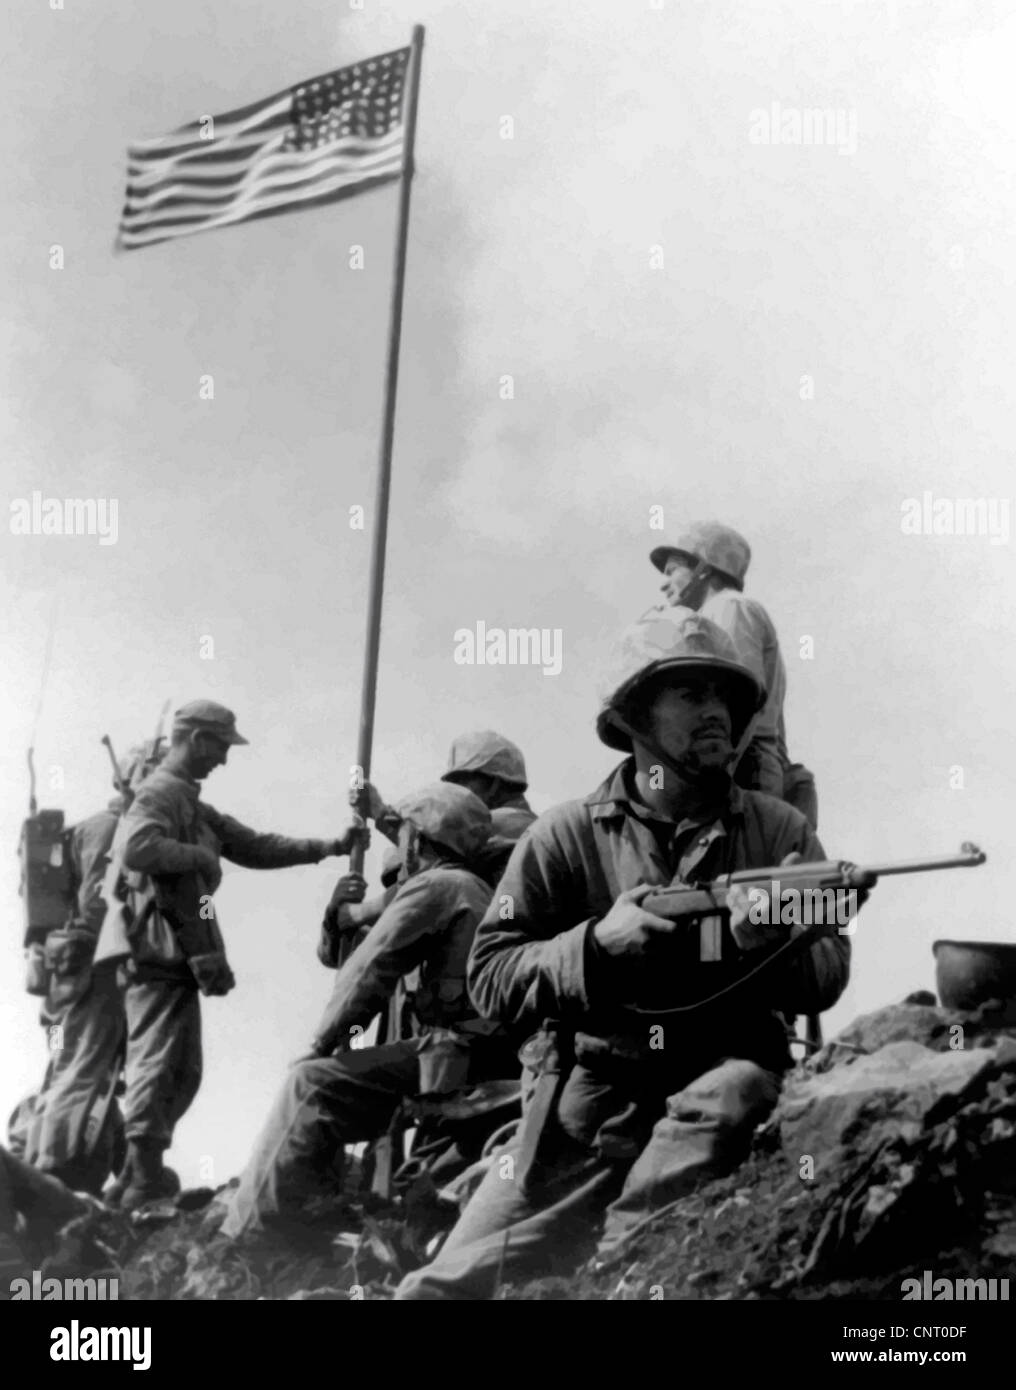 Vecteur restaurés numériquement photographie de la 1ère levée du drapeau américain au cours de la bataille d'Iwo Jima sur le mont Suribachi. Banque D'Images